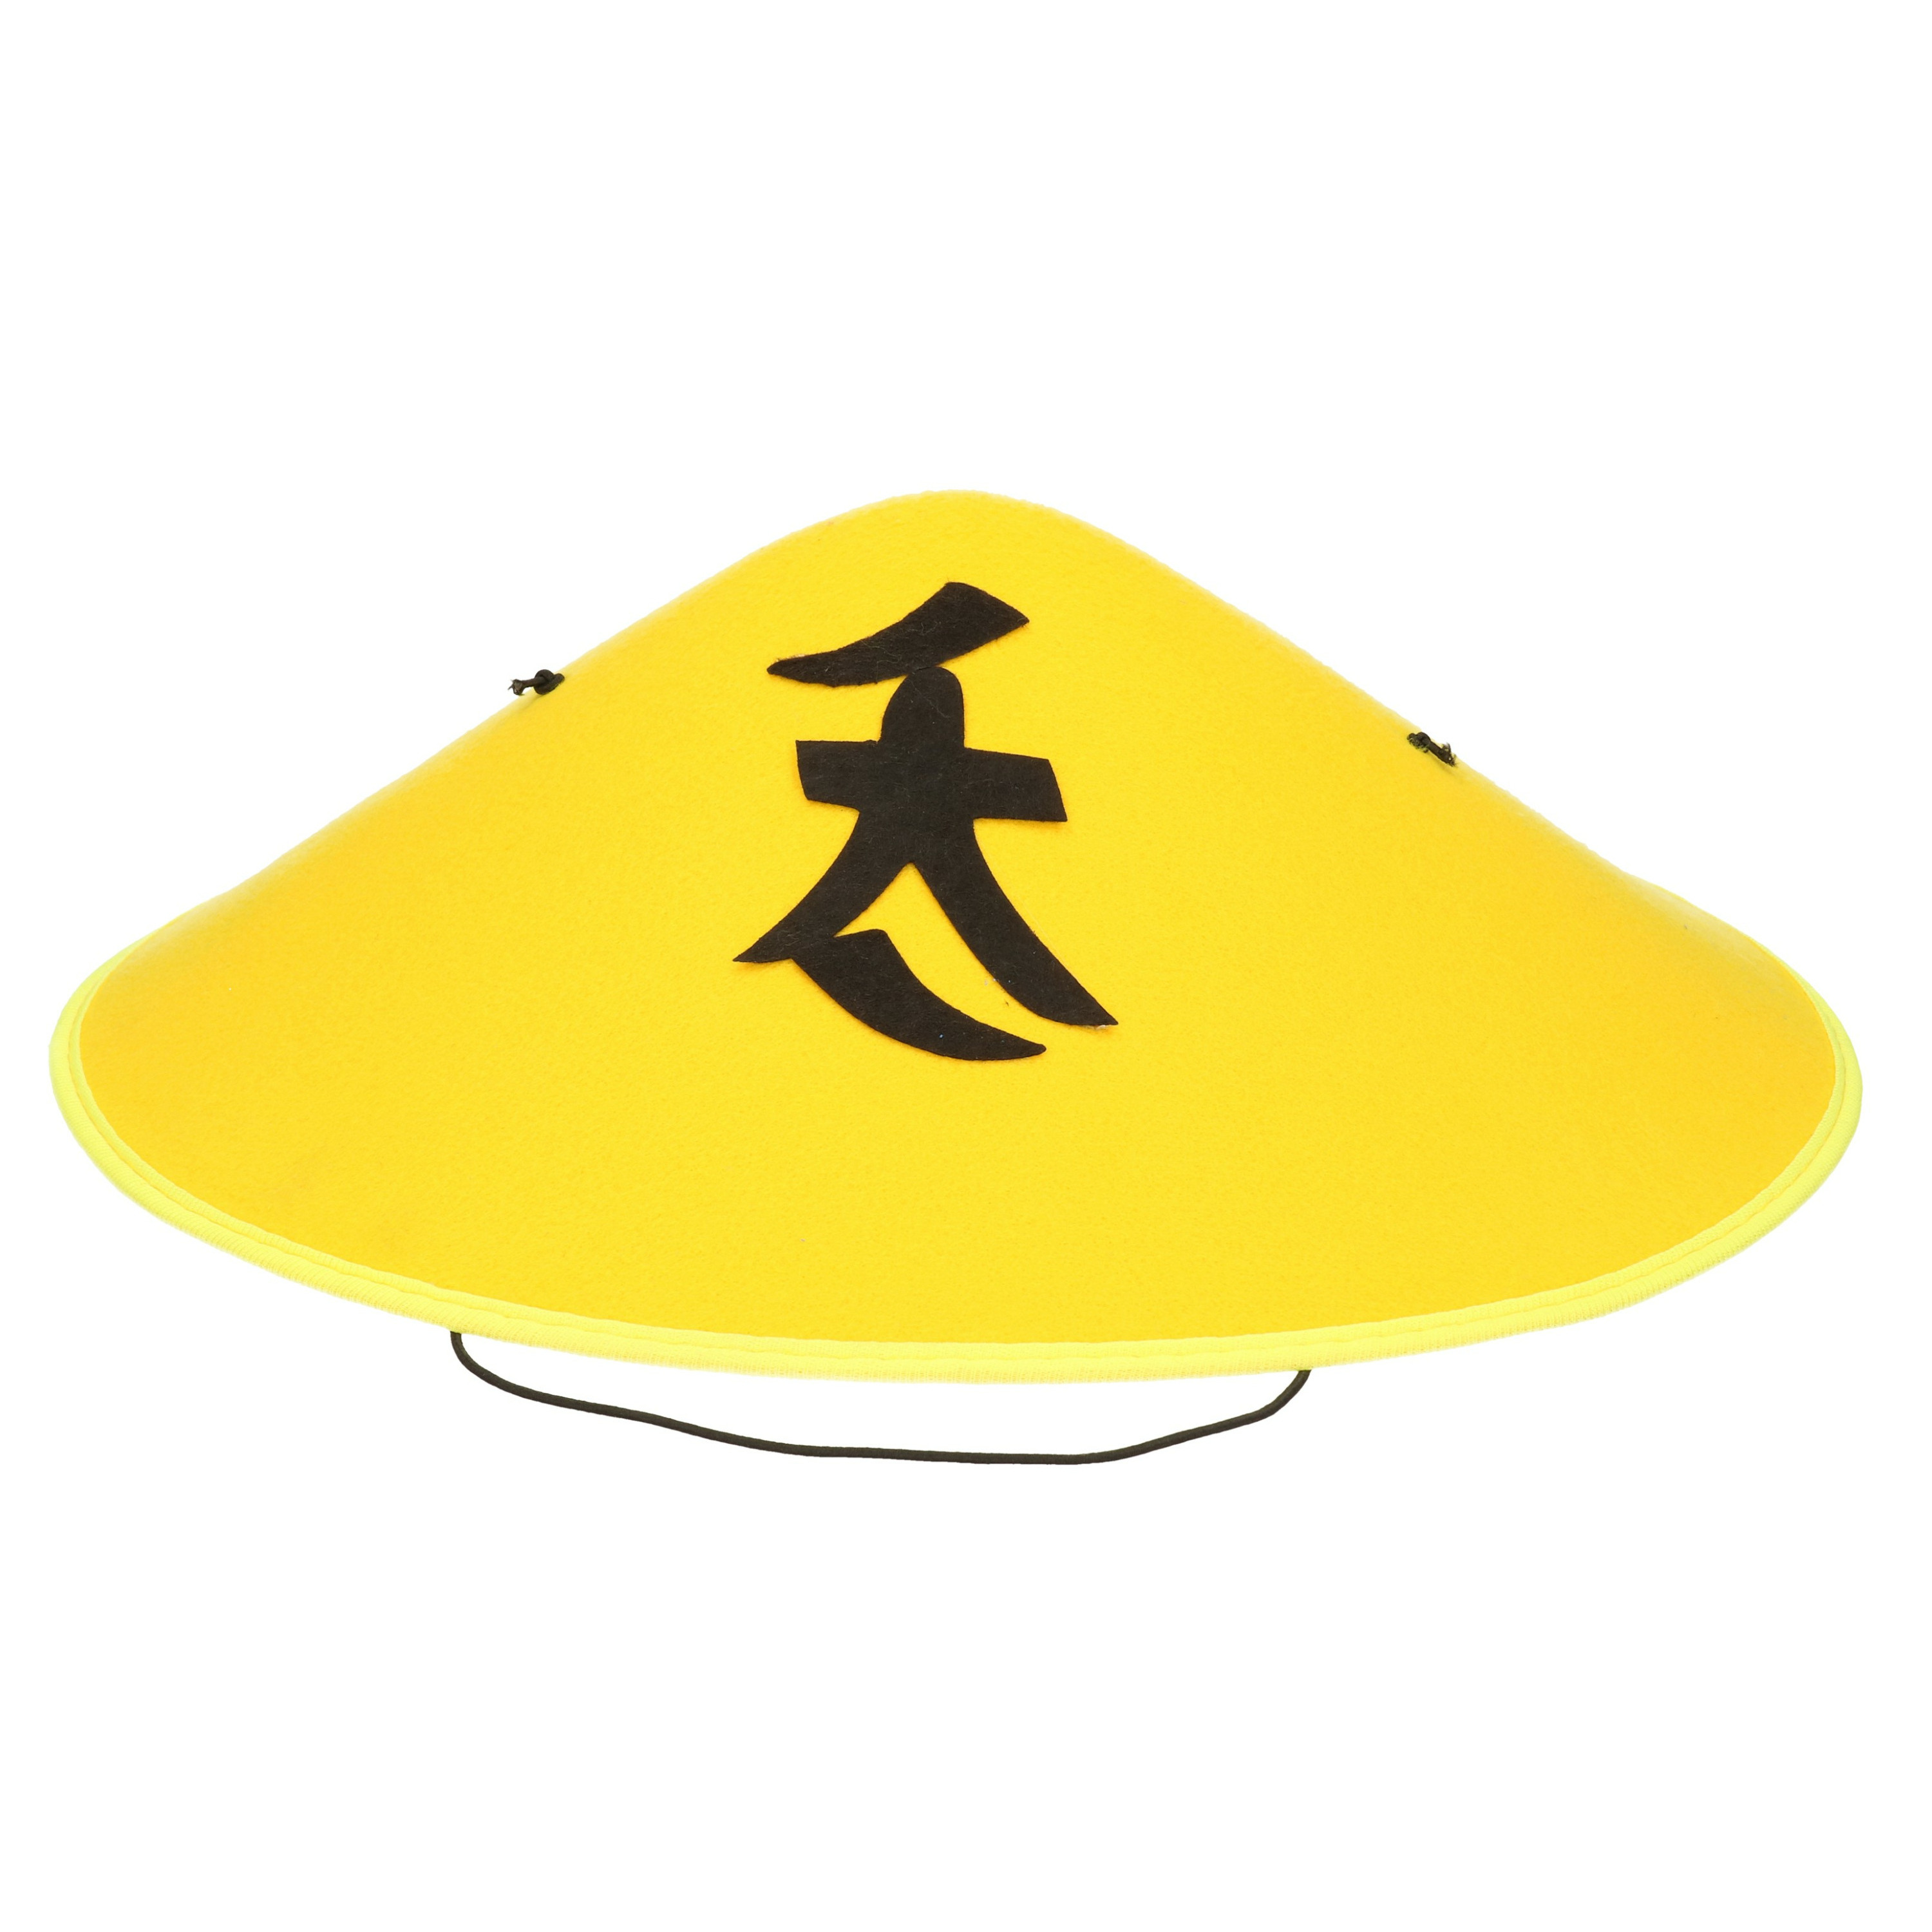 Chinese Aziatische hoed geel verkleed accessoire